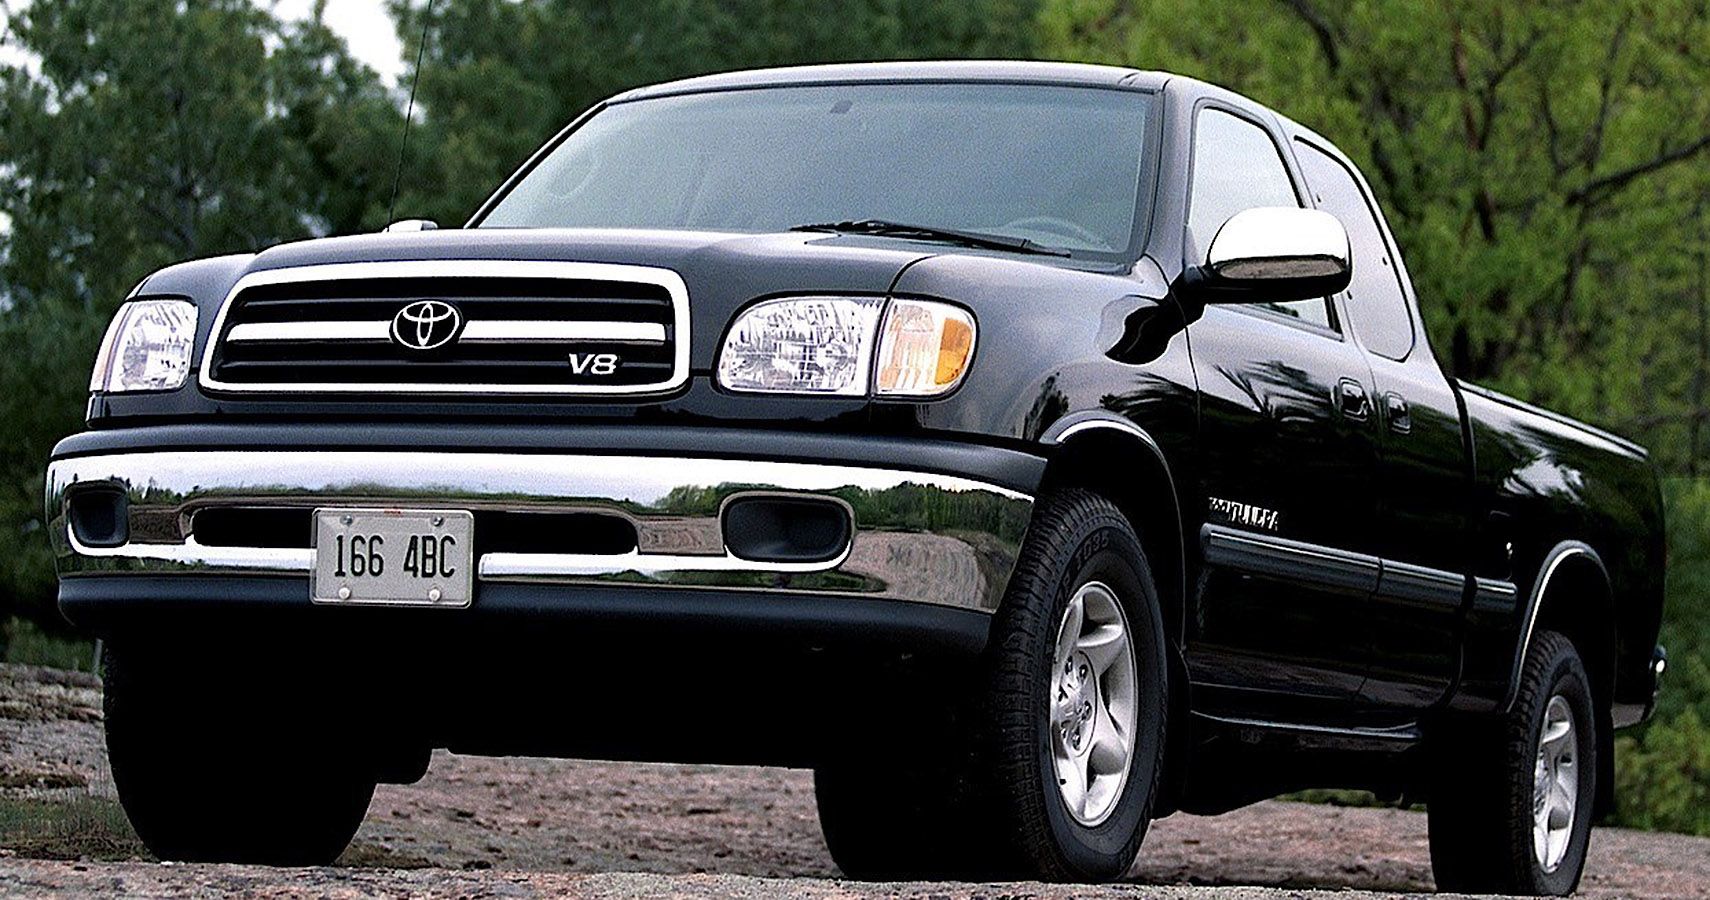 2000 Toyota Tundra